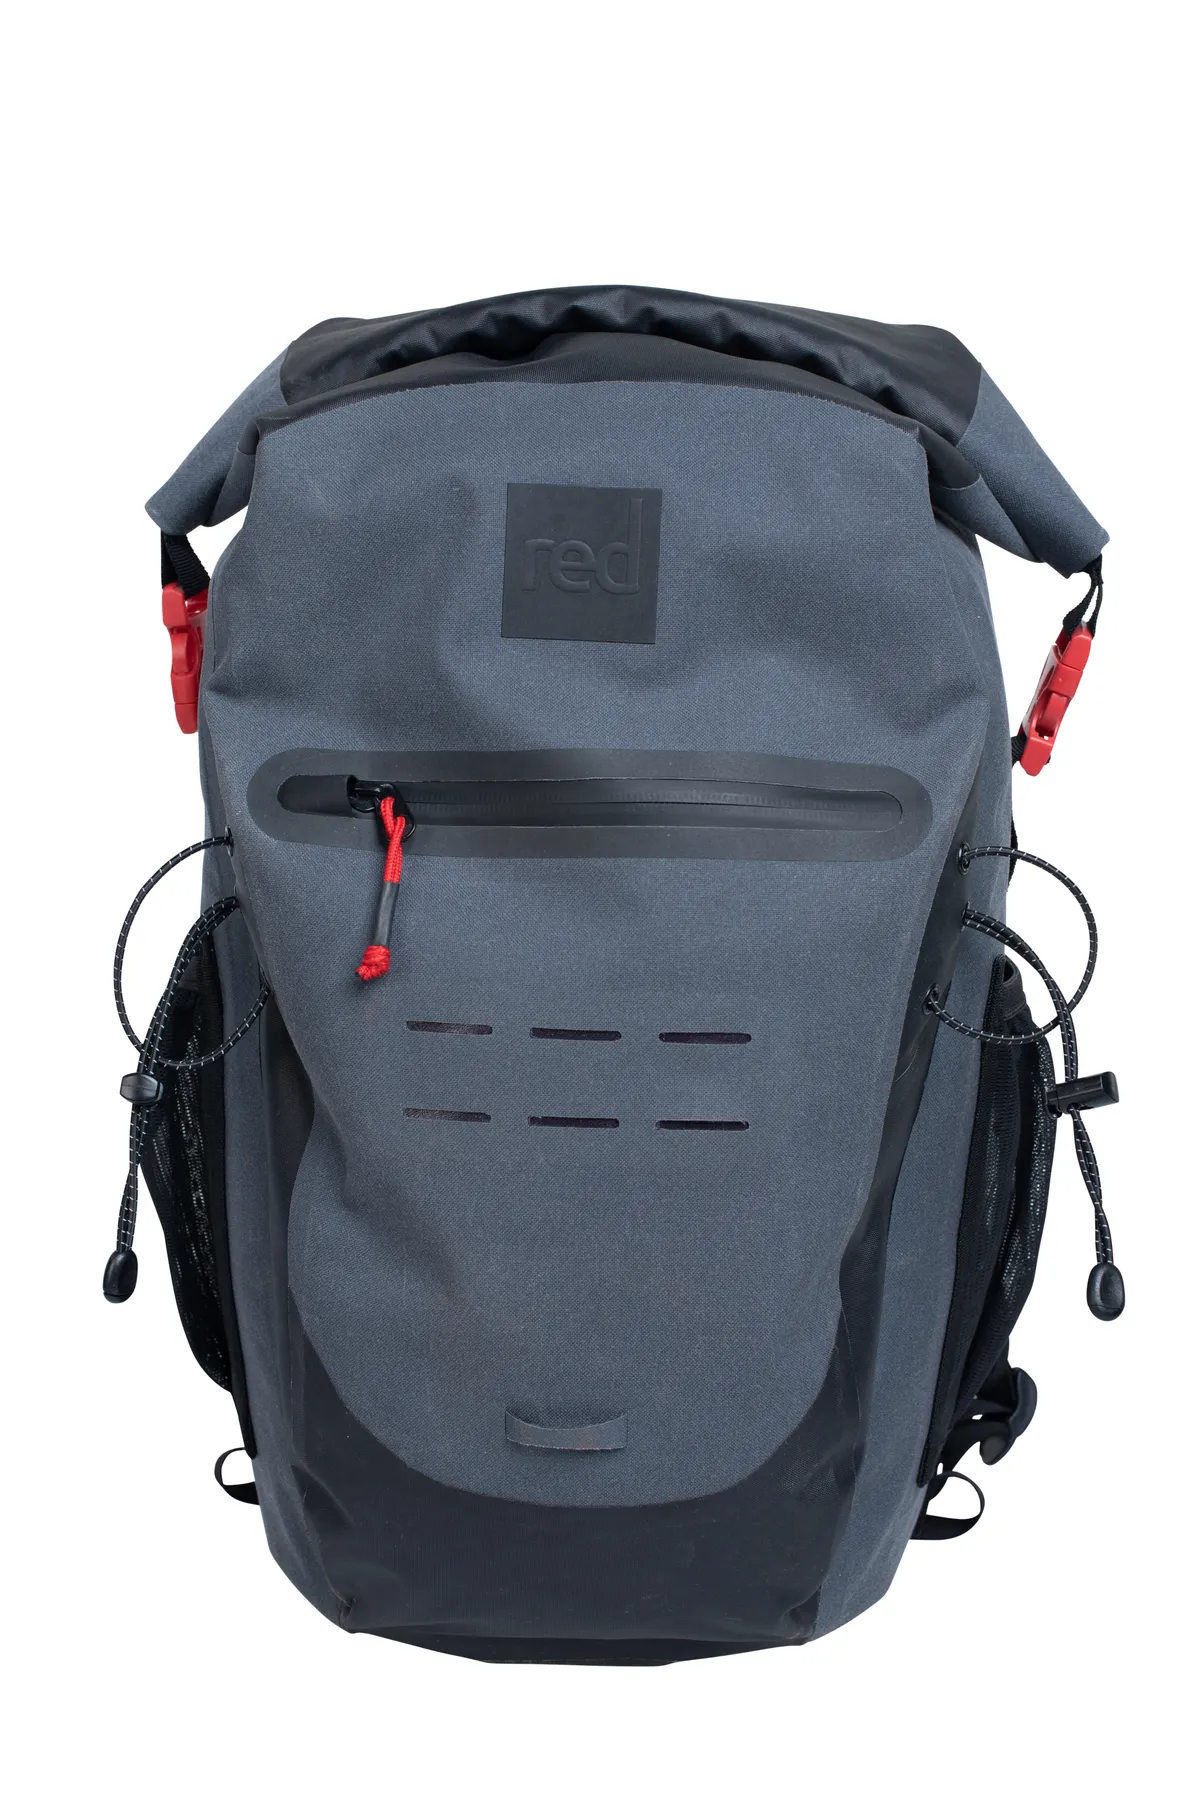 Red Waterproof backpack